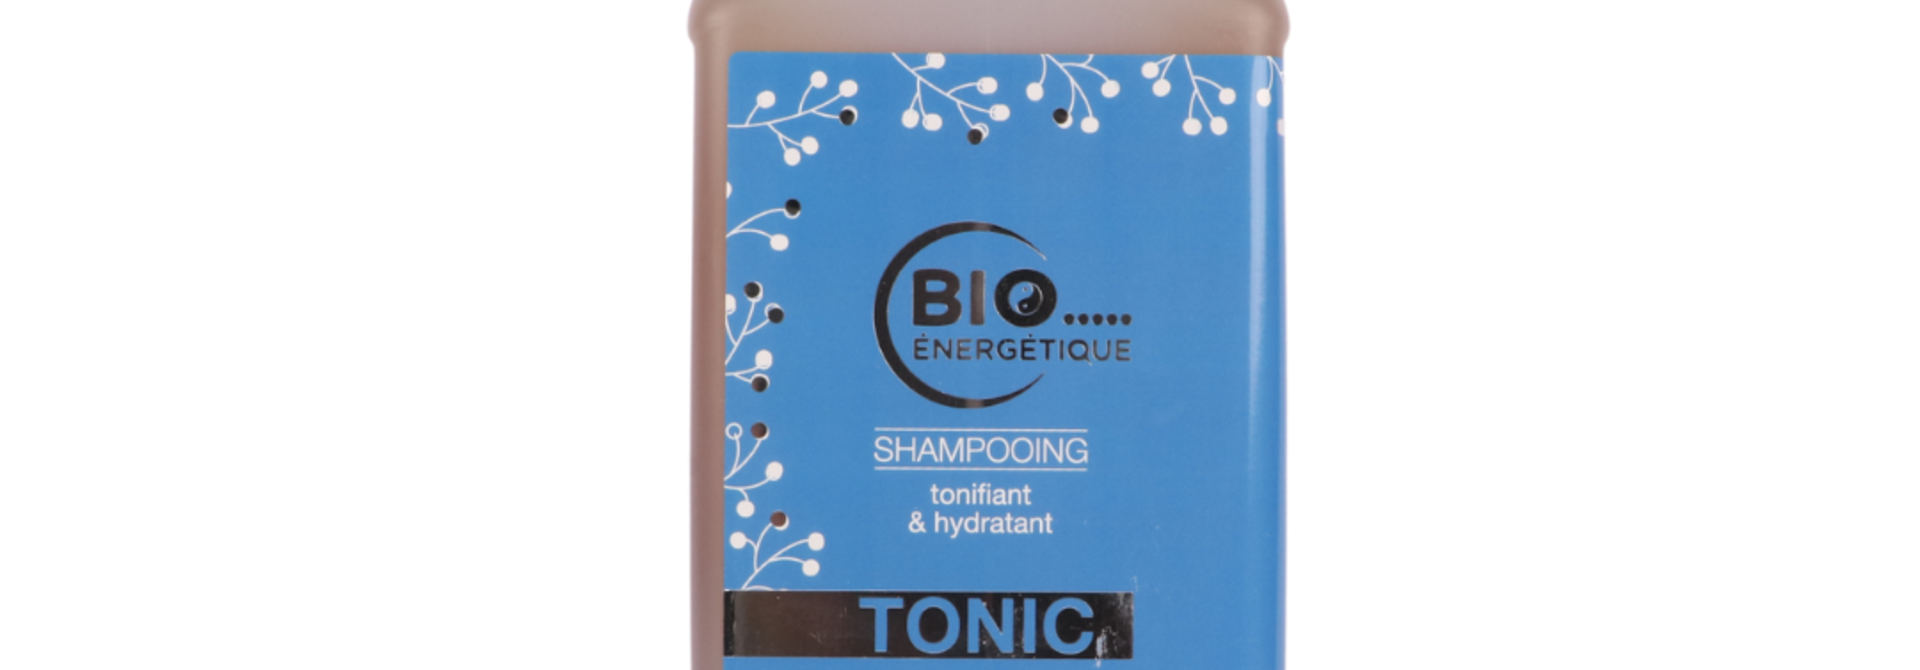 TONIC Shampoo / Toning & moisturizing 200ml